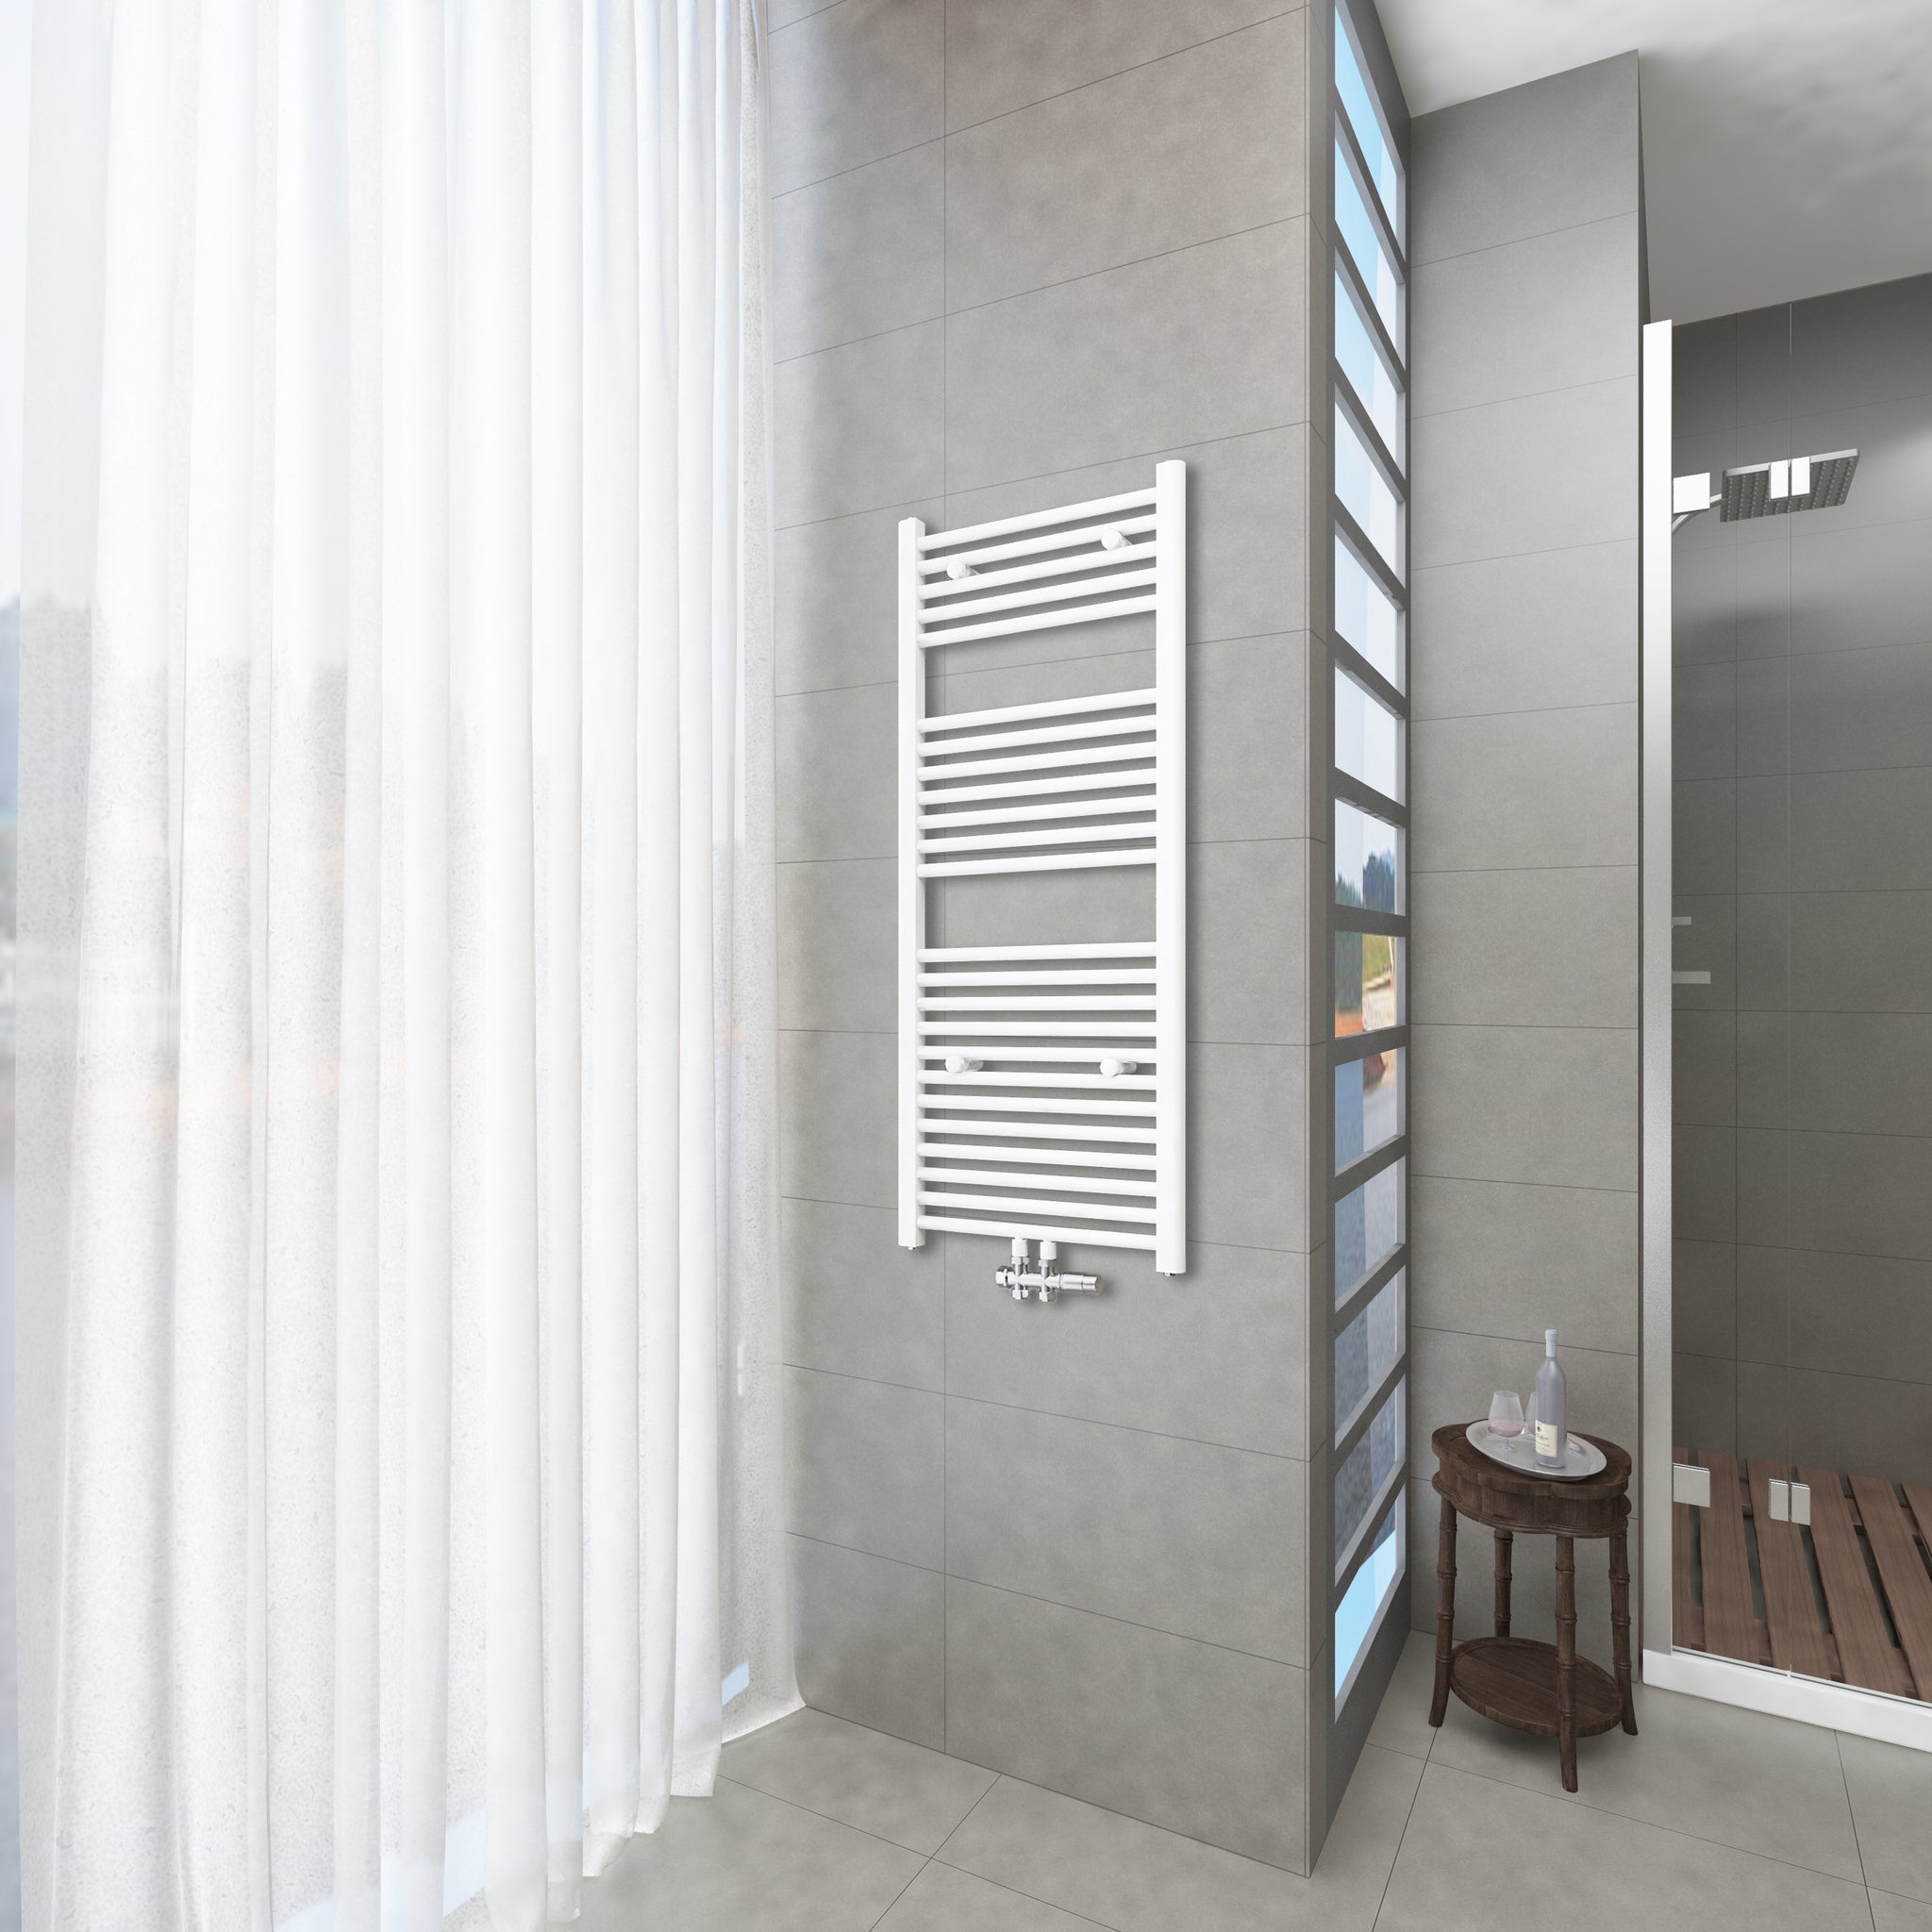 Badheizkörper Weiß - 120x50 CM  Heizkörper und Handtuchtrockner in einem - Mittelanschluss - Rauchfreie Kohleheizung für das Badezimmer